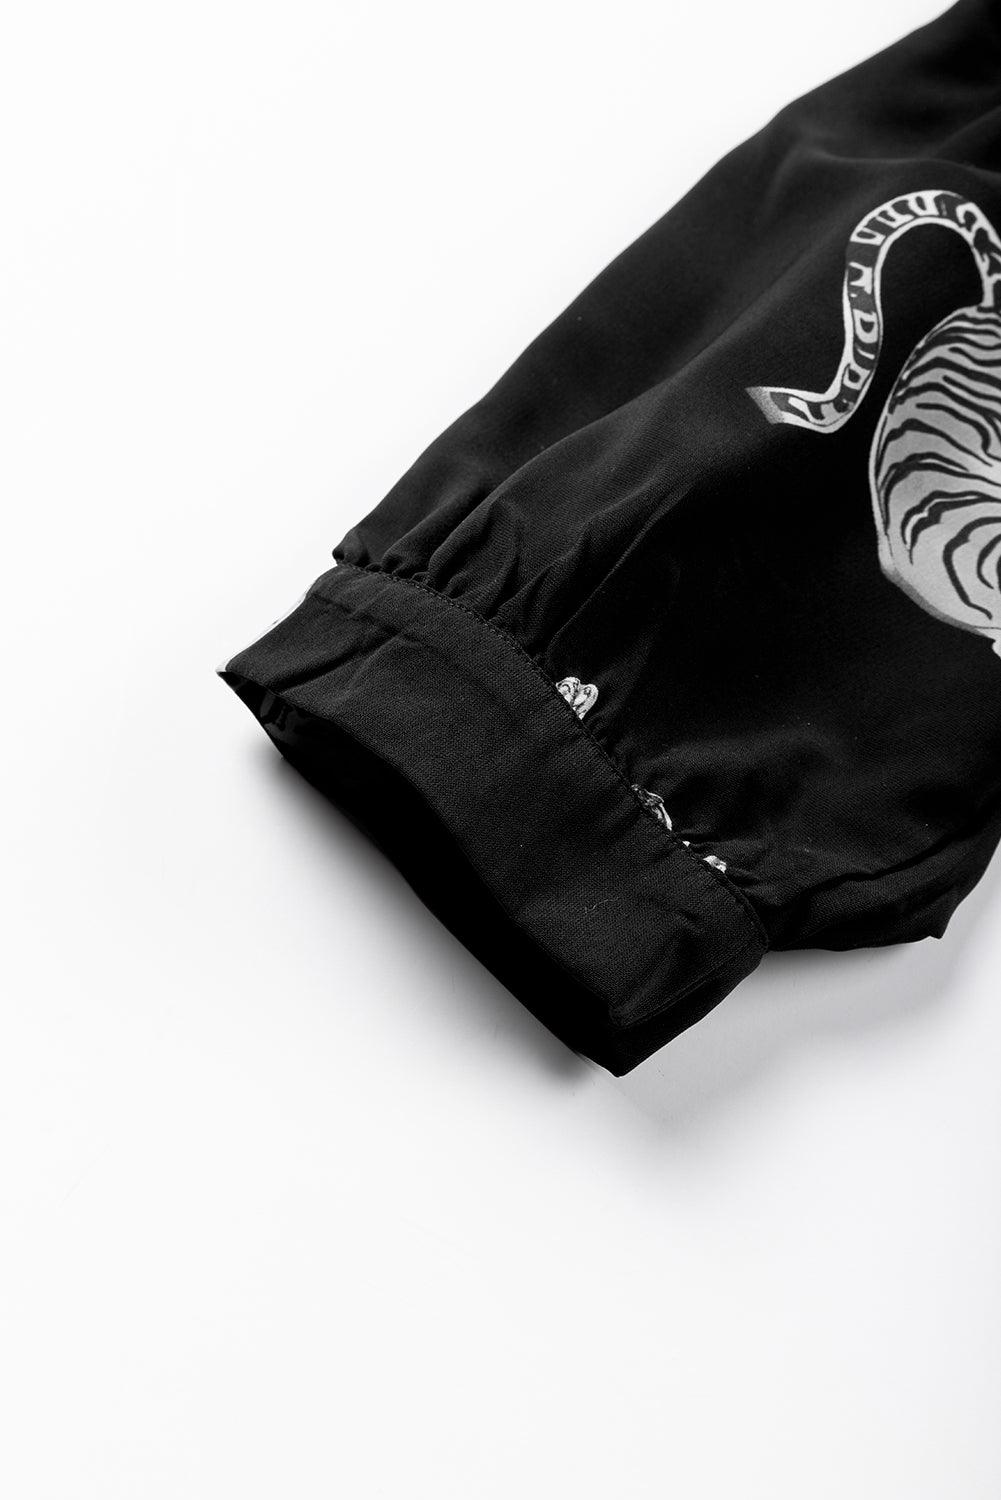 Schwarzes, übergroßes Hemd mit Tigermuster und 3/4-Ärmeln